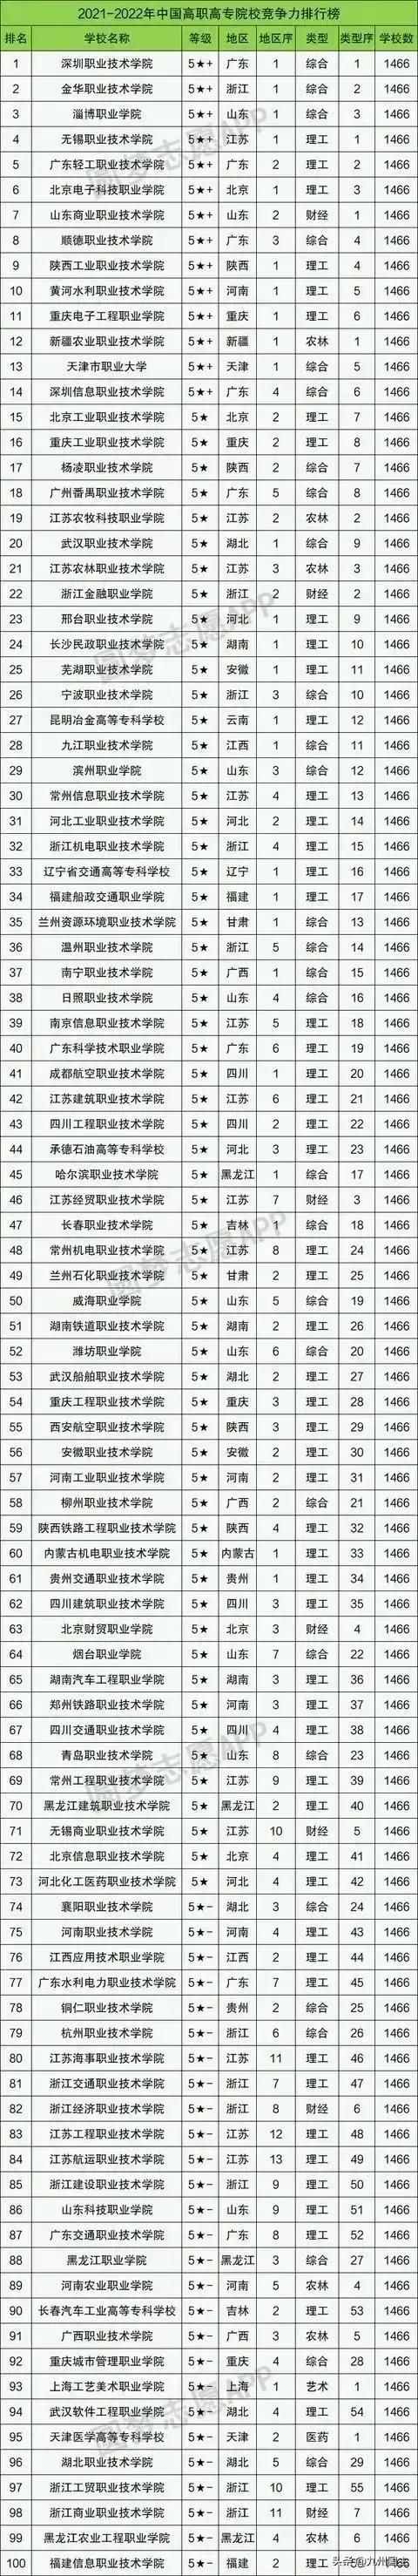 中国高职高专院校2020-2021年竞争力排行榜100强